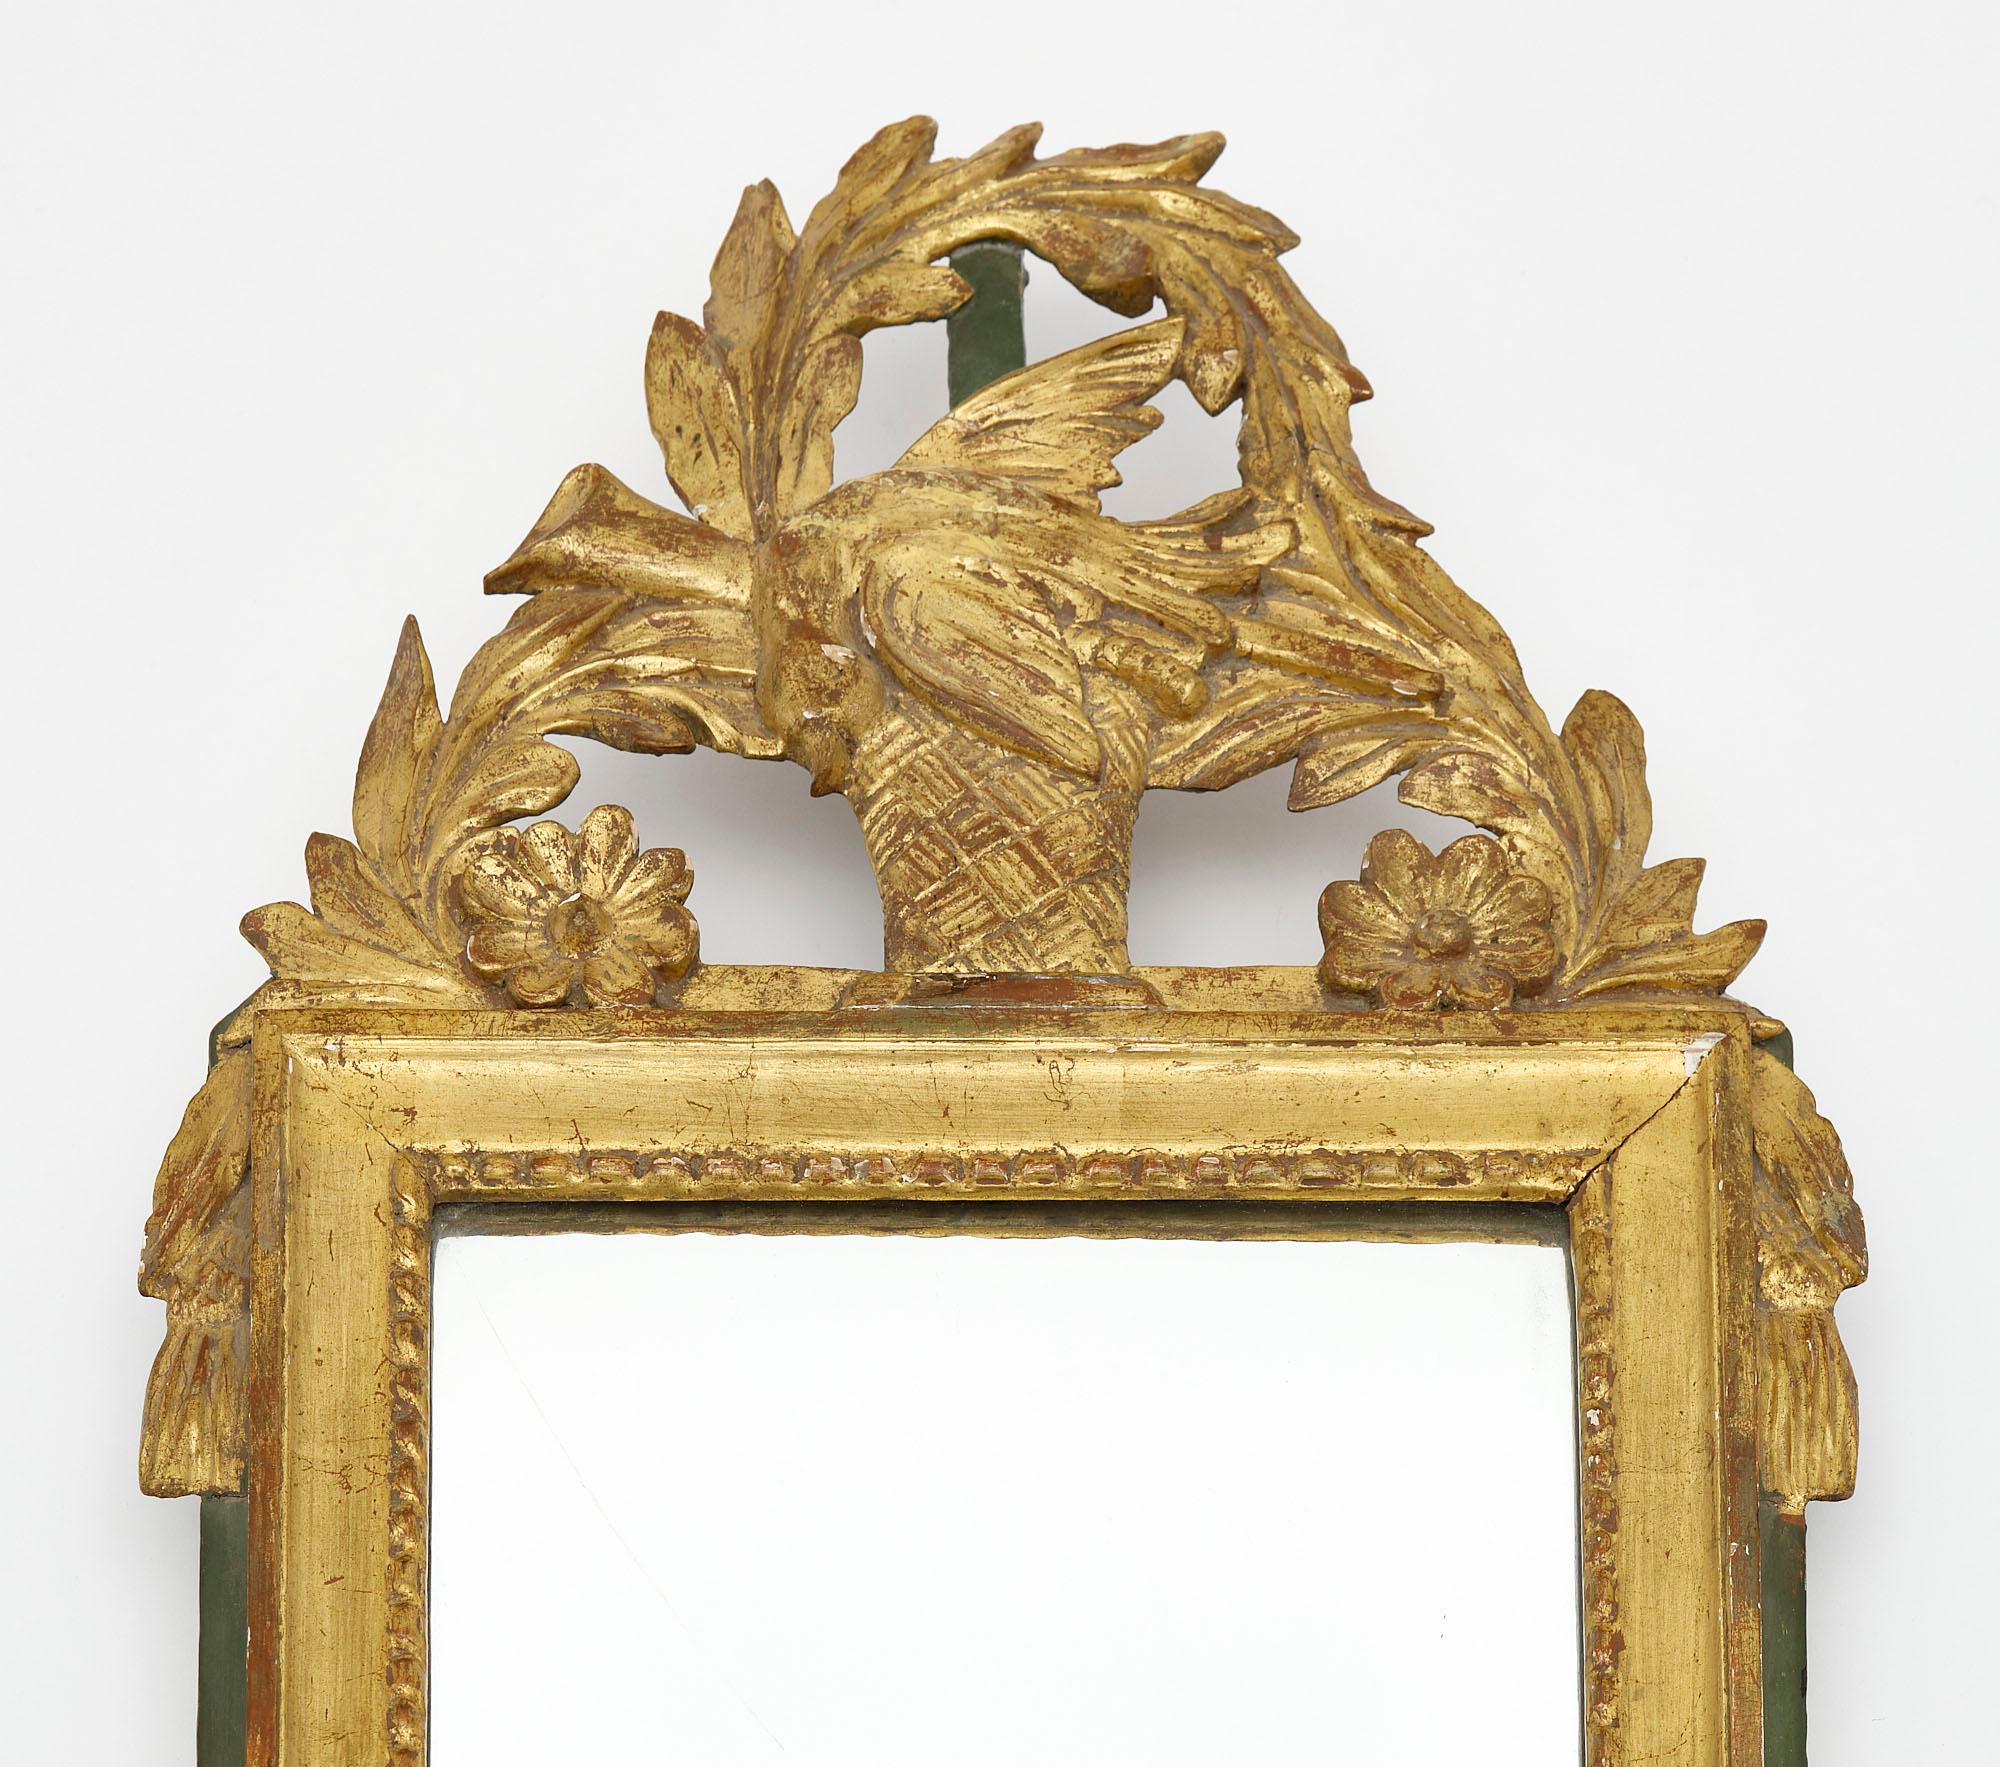 Miroir de France de la période Louis XVI. Cette pièce est faite de bois stuqué sculpté à la main avec un fronton qui présente un oiseau, des motifs floraux et une couronne de laurier. La feuille d'or 24 carats est d'origine, tout comme le miroir au